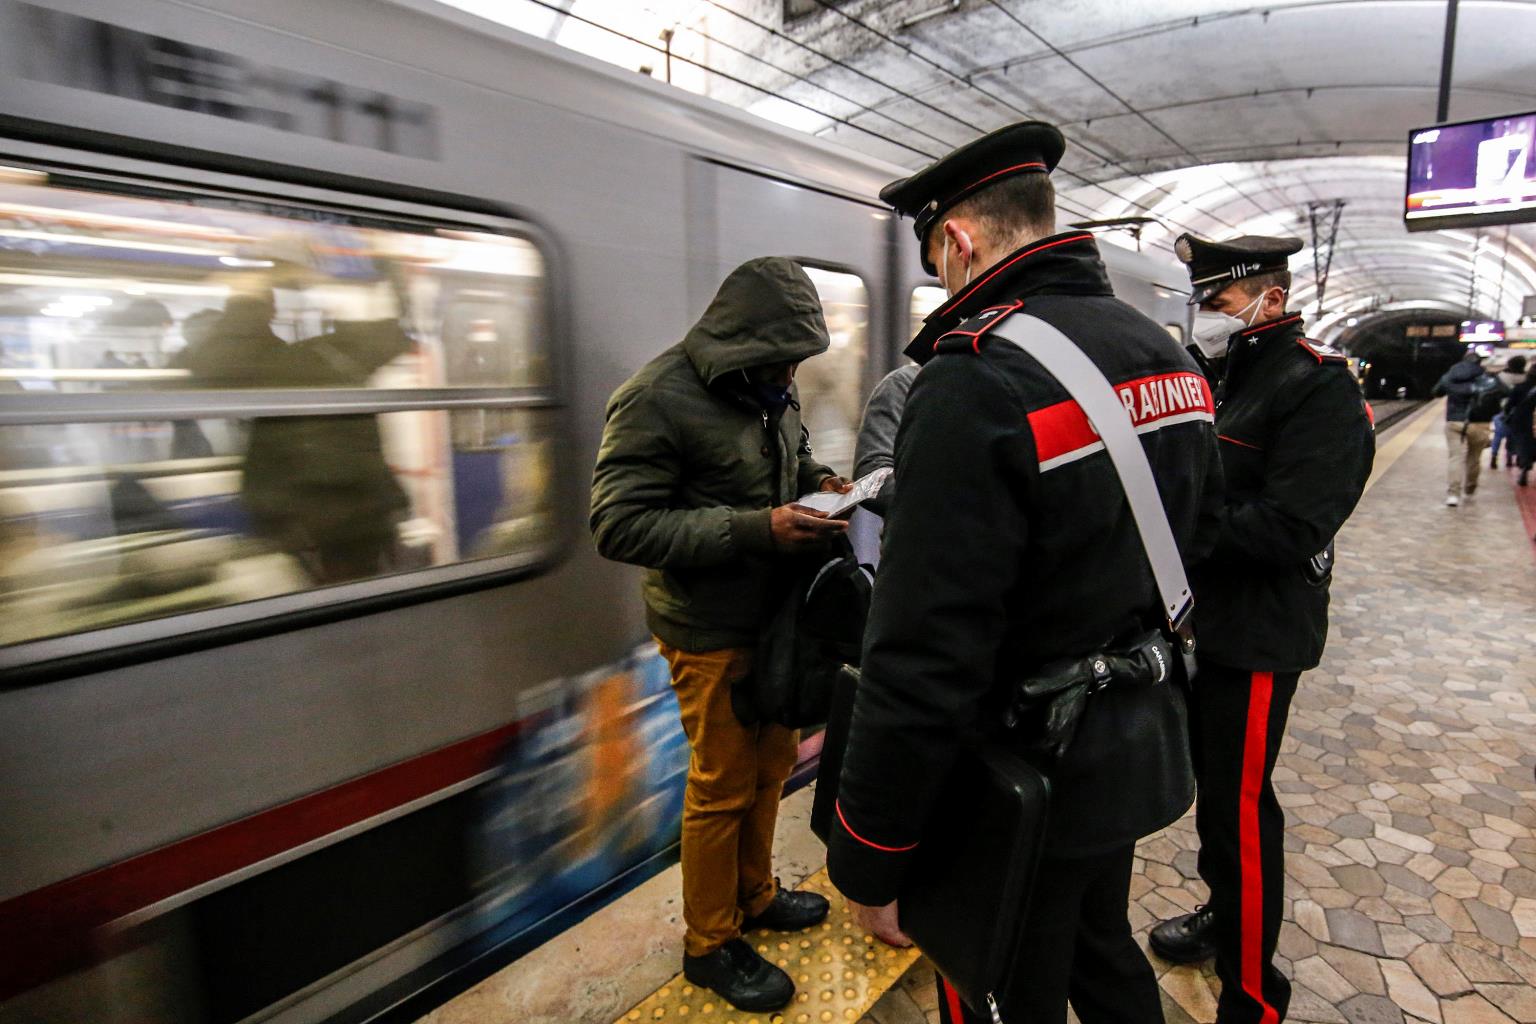 Arrivano i carabinieri ma non ha il Green Pass: uomo rimane chiuso nel bagno del treno